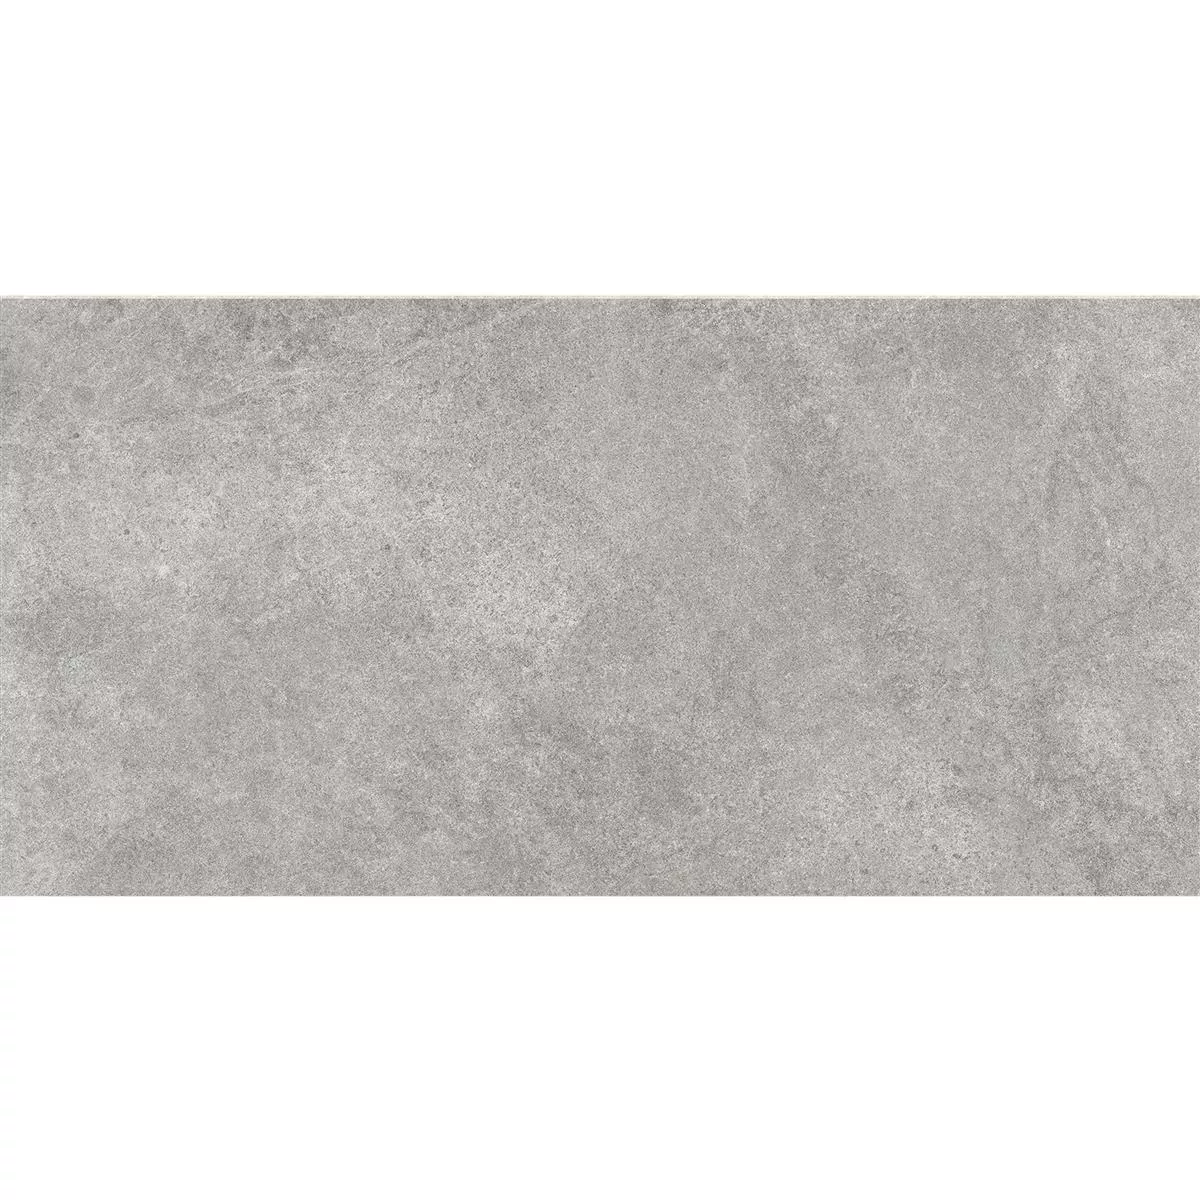 Πλακάκια Δαπέδου Montana Άγυαλο Σκούρο Γκρι 30x60cm / R10B